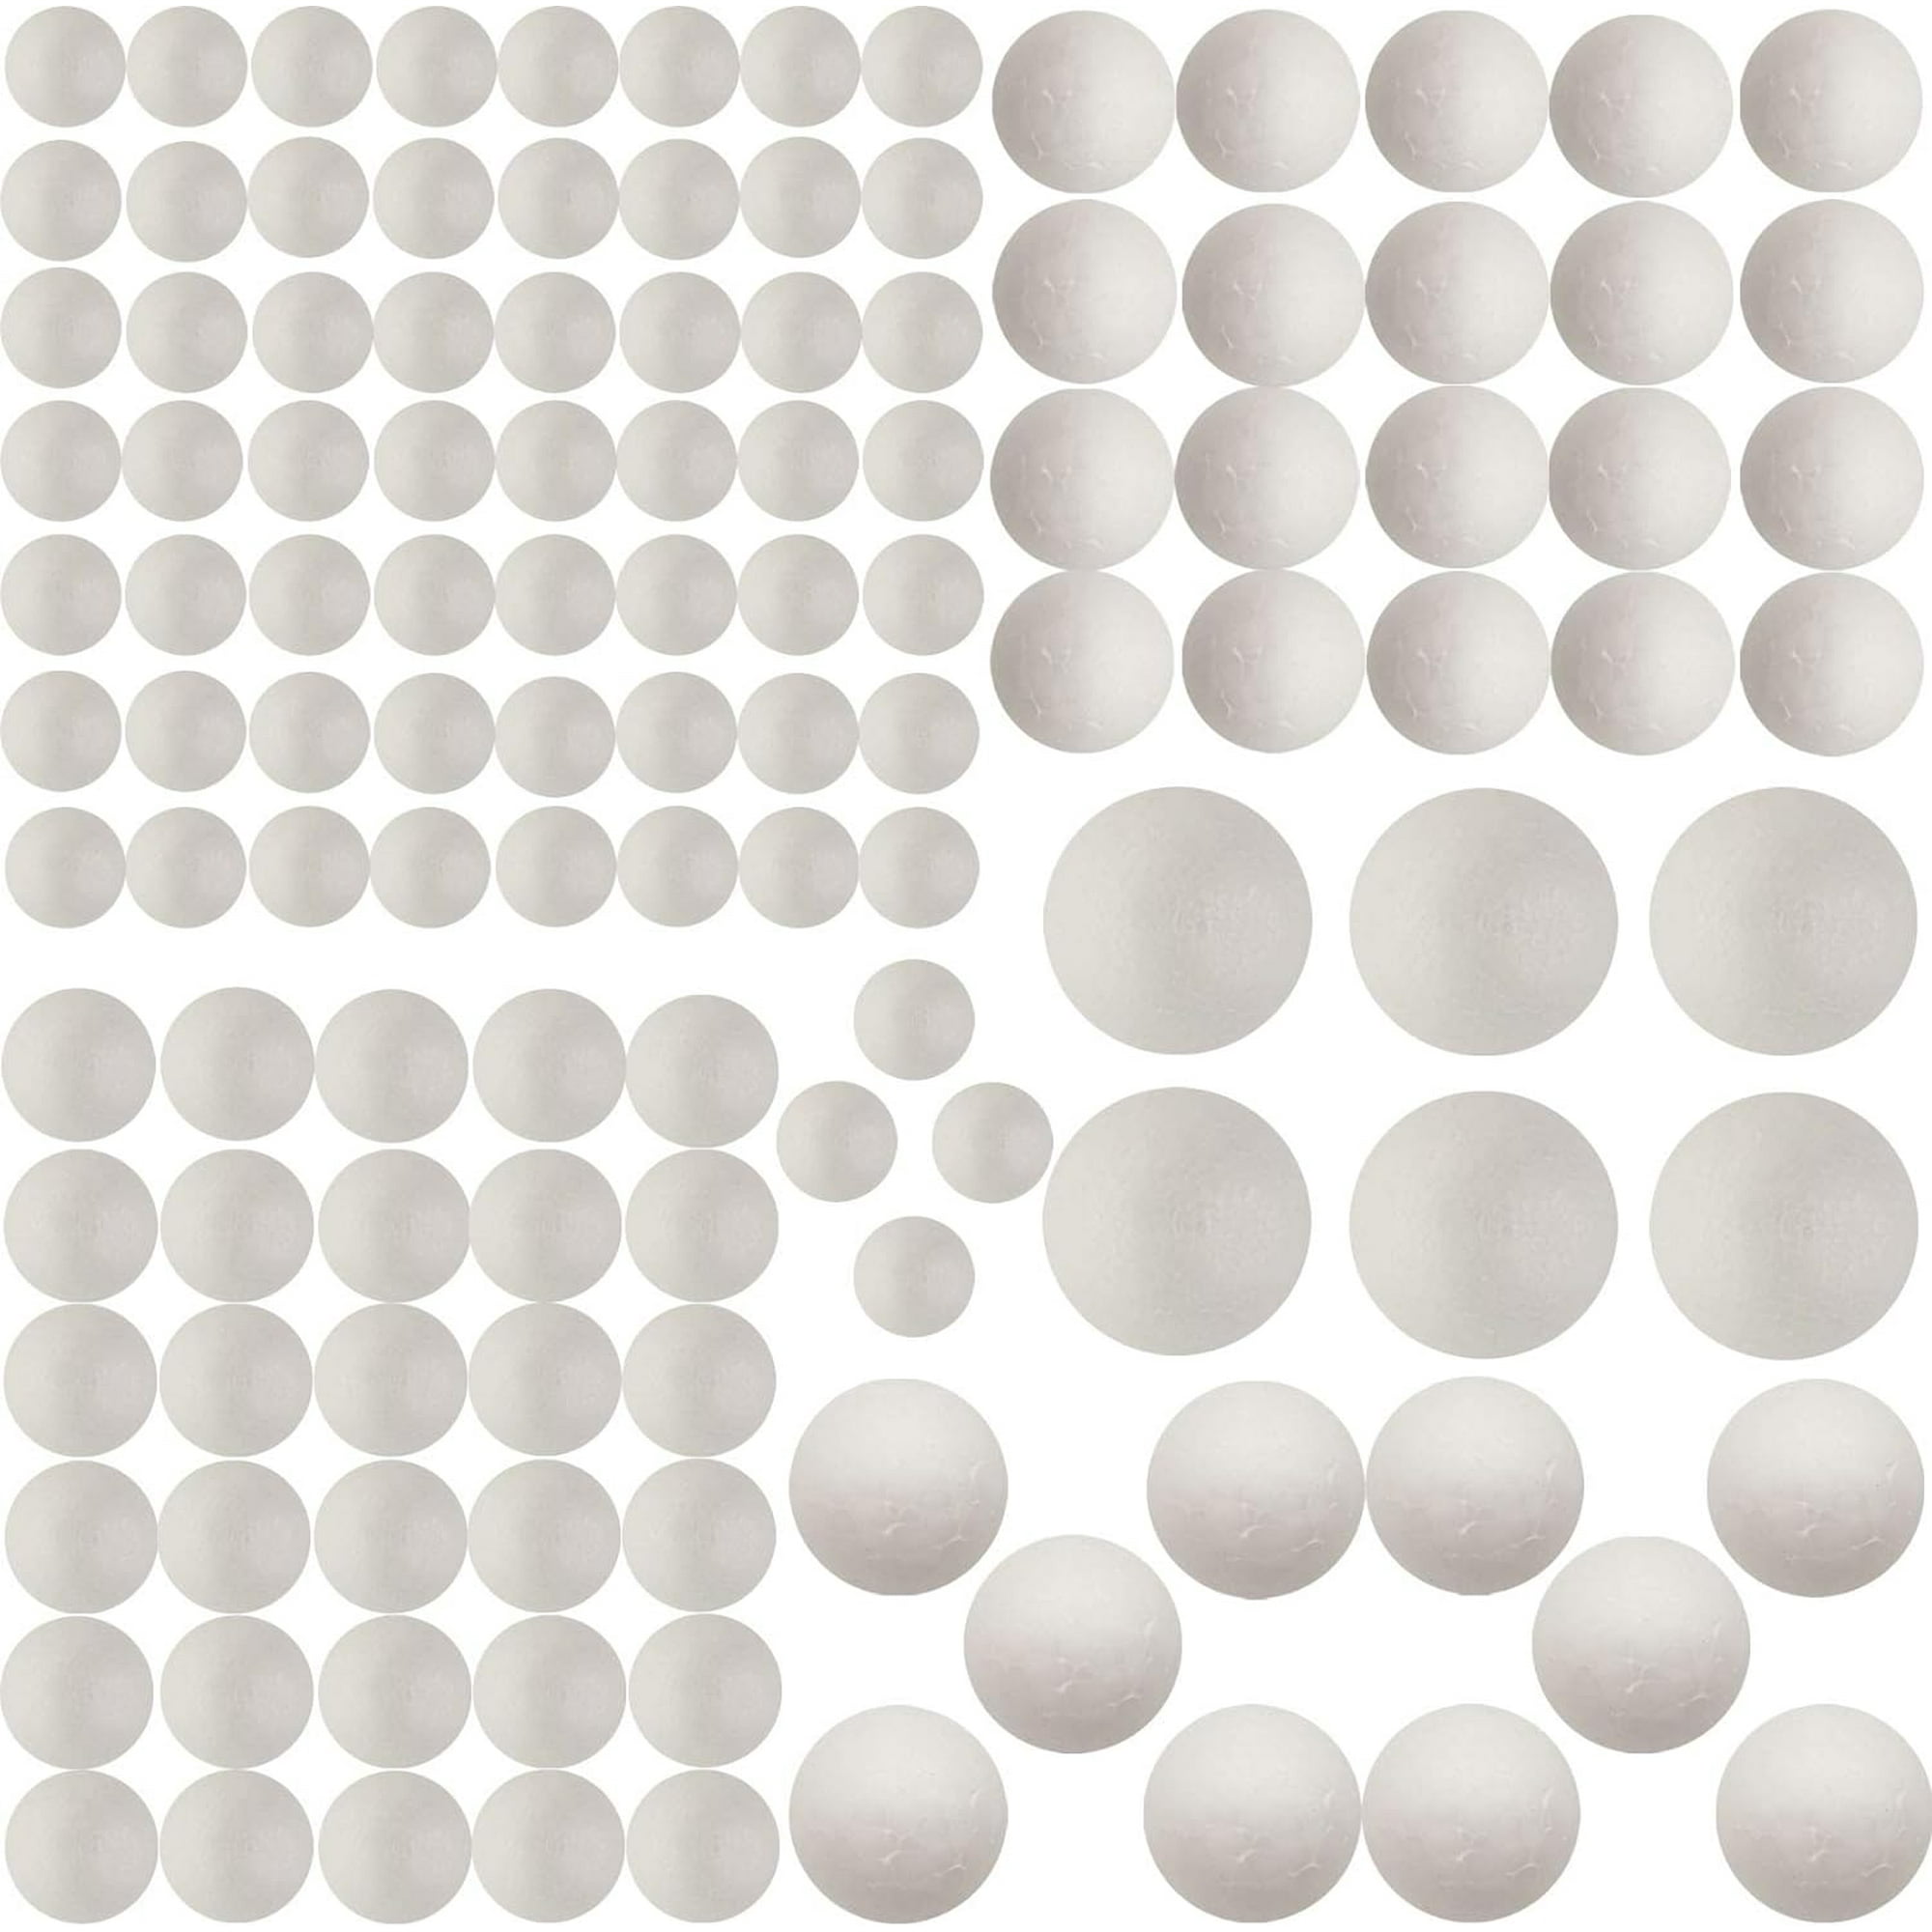 Paquete de 2 bolas de espuma para manualidades, esferas redondas de  poliestireno blanco de 6 pulgadas para proyectos de bricolaje, adornos,  modelado